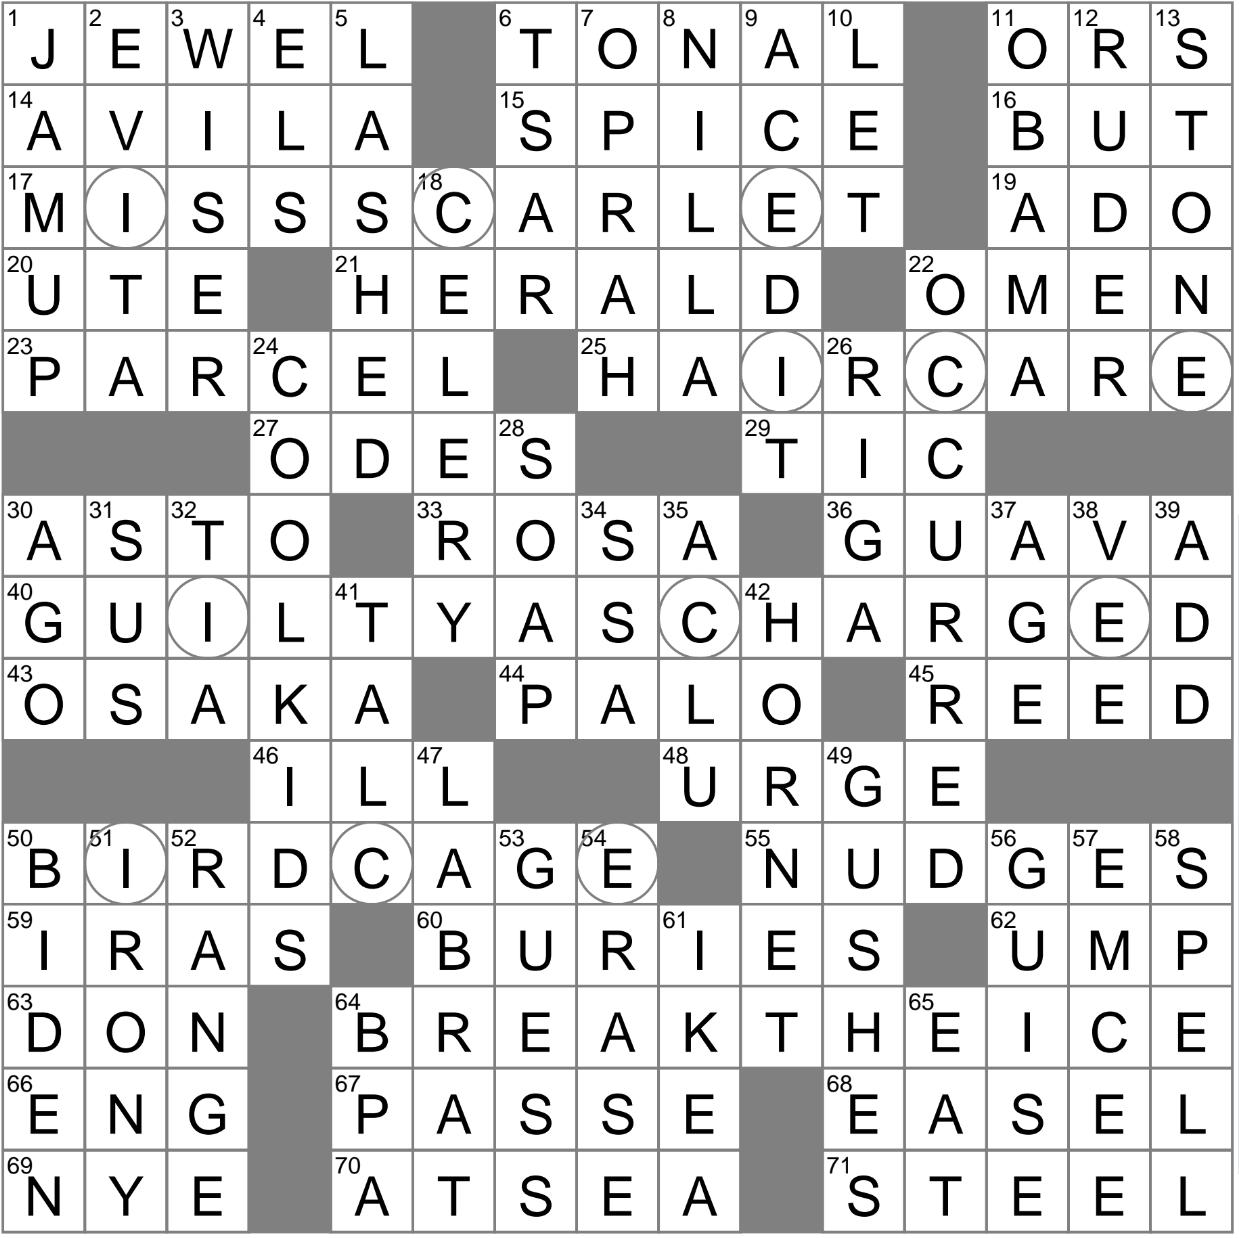 Speculate crossword puzzle clue